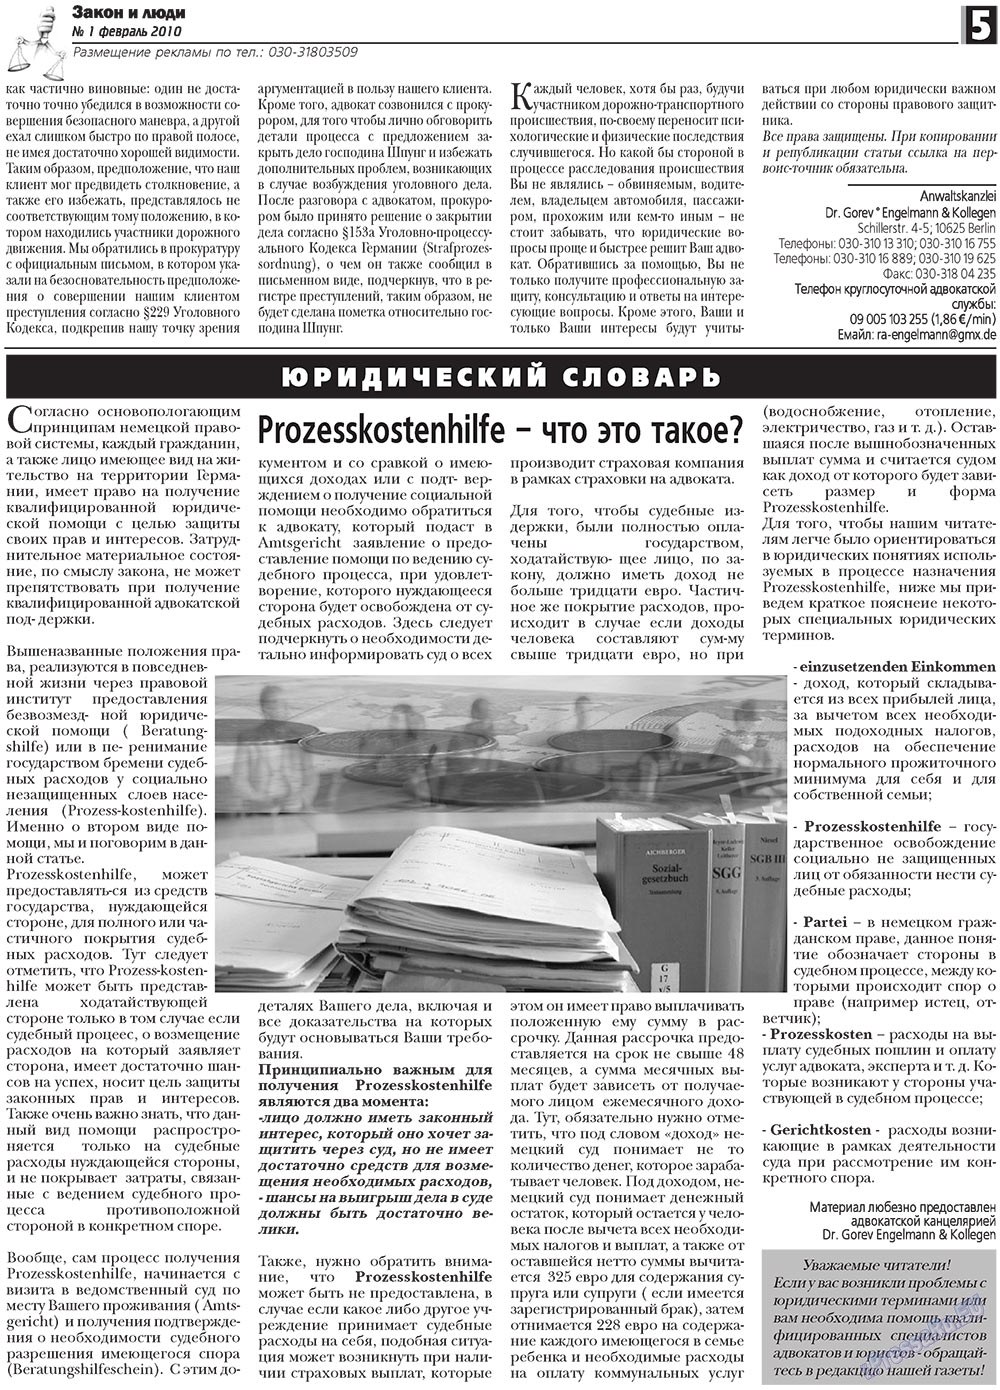 Закон и люди, газета. 2010 №1 стр.5